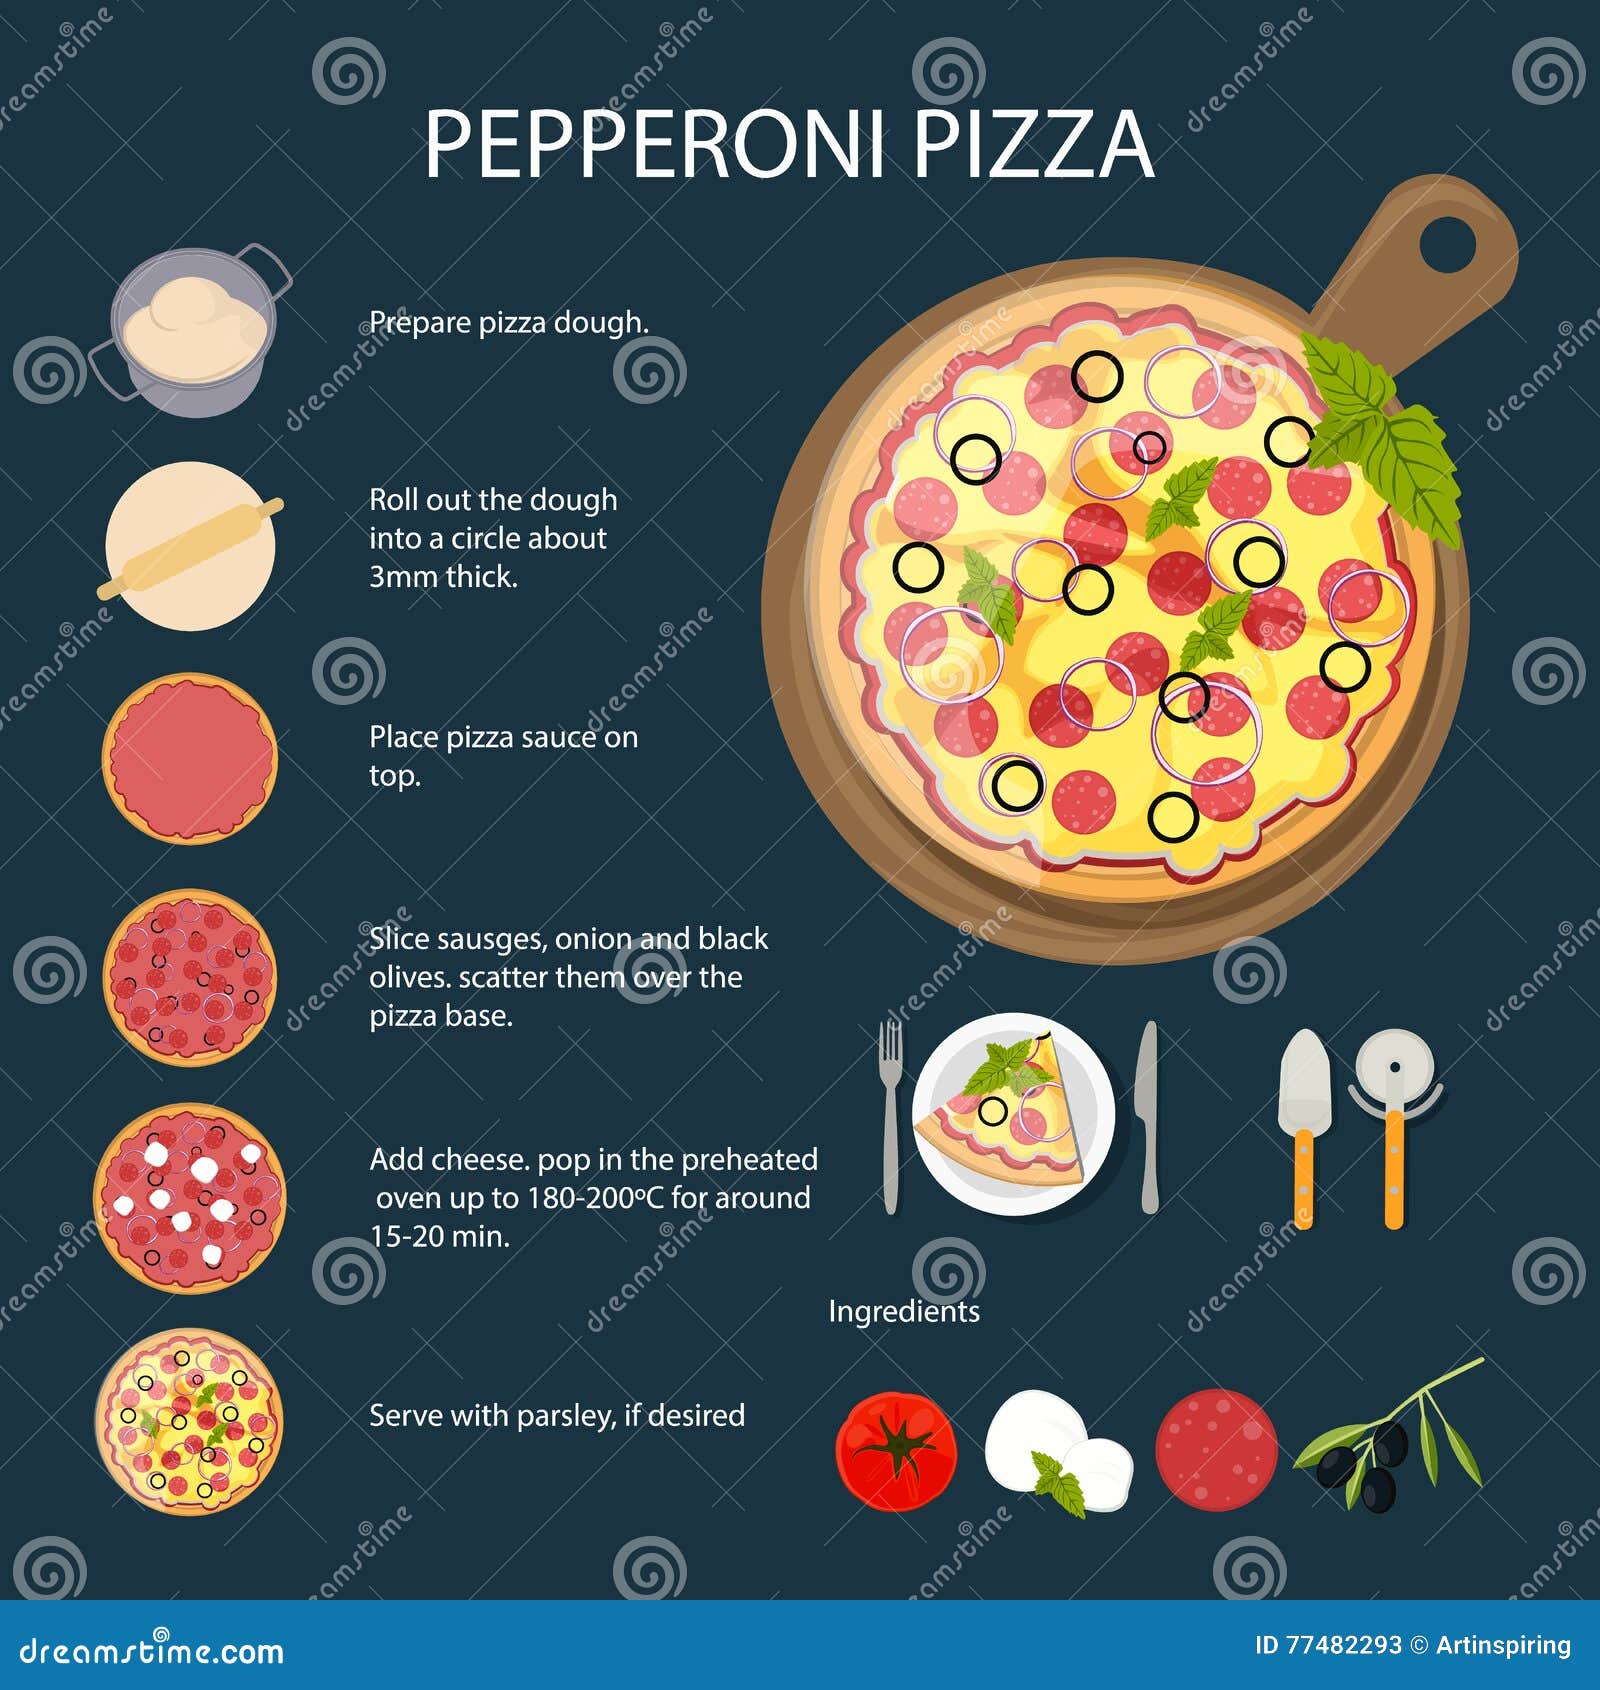 ттк для пиццы пепперони (120) фото